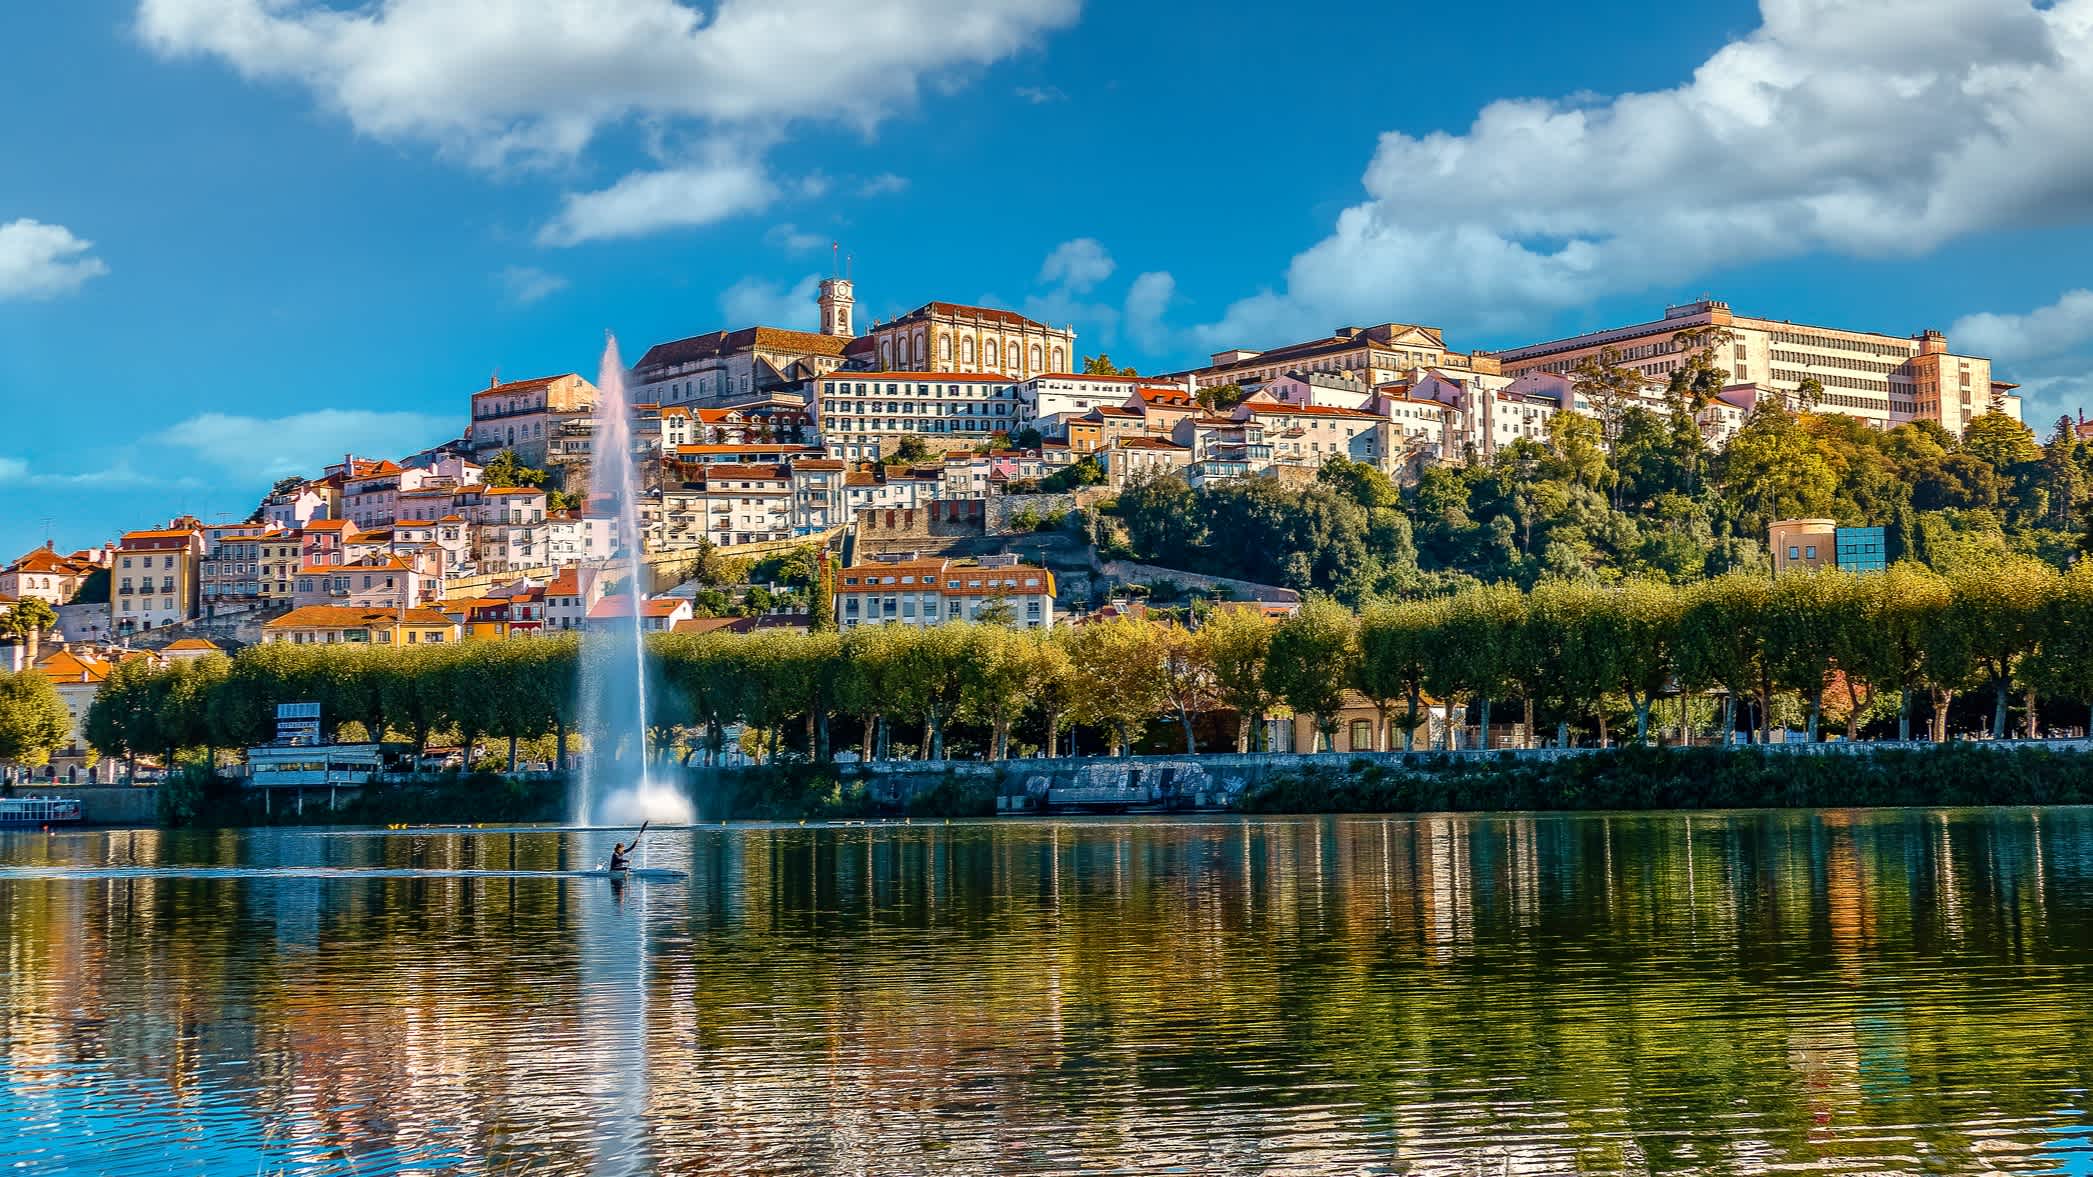 Blick auf die Stadt Coimbra vom Fluss aus mit Kanufahrer